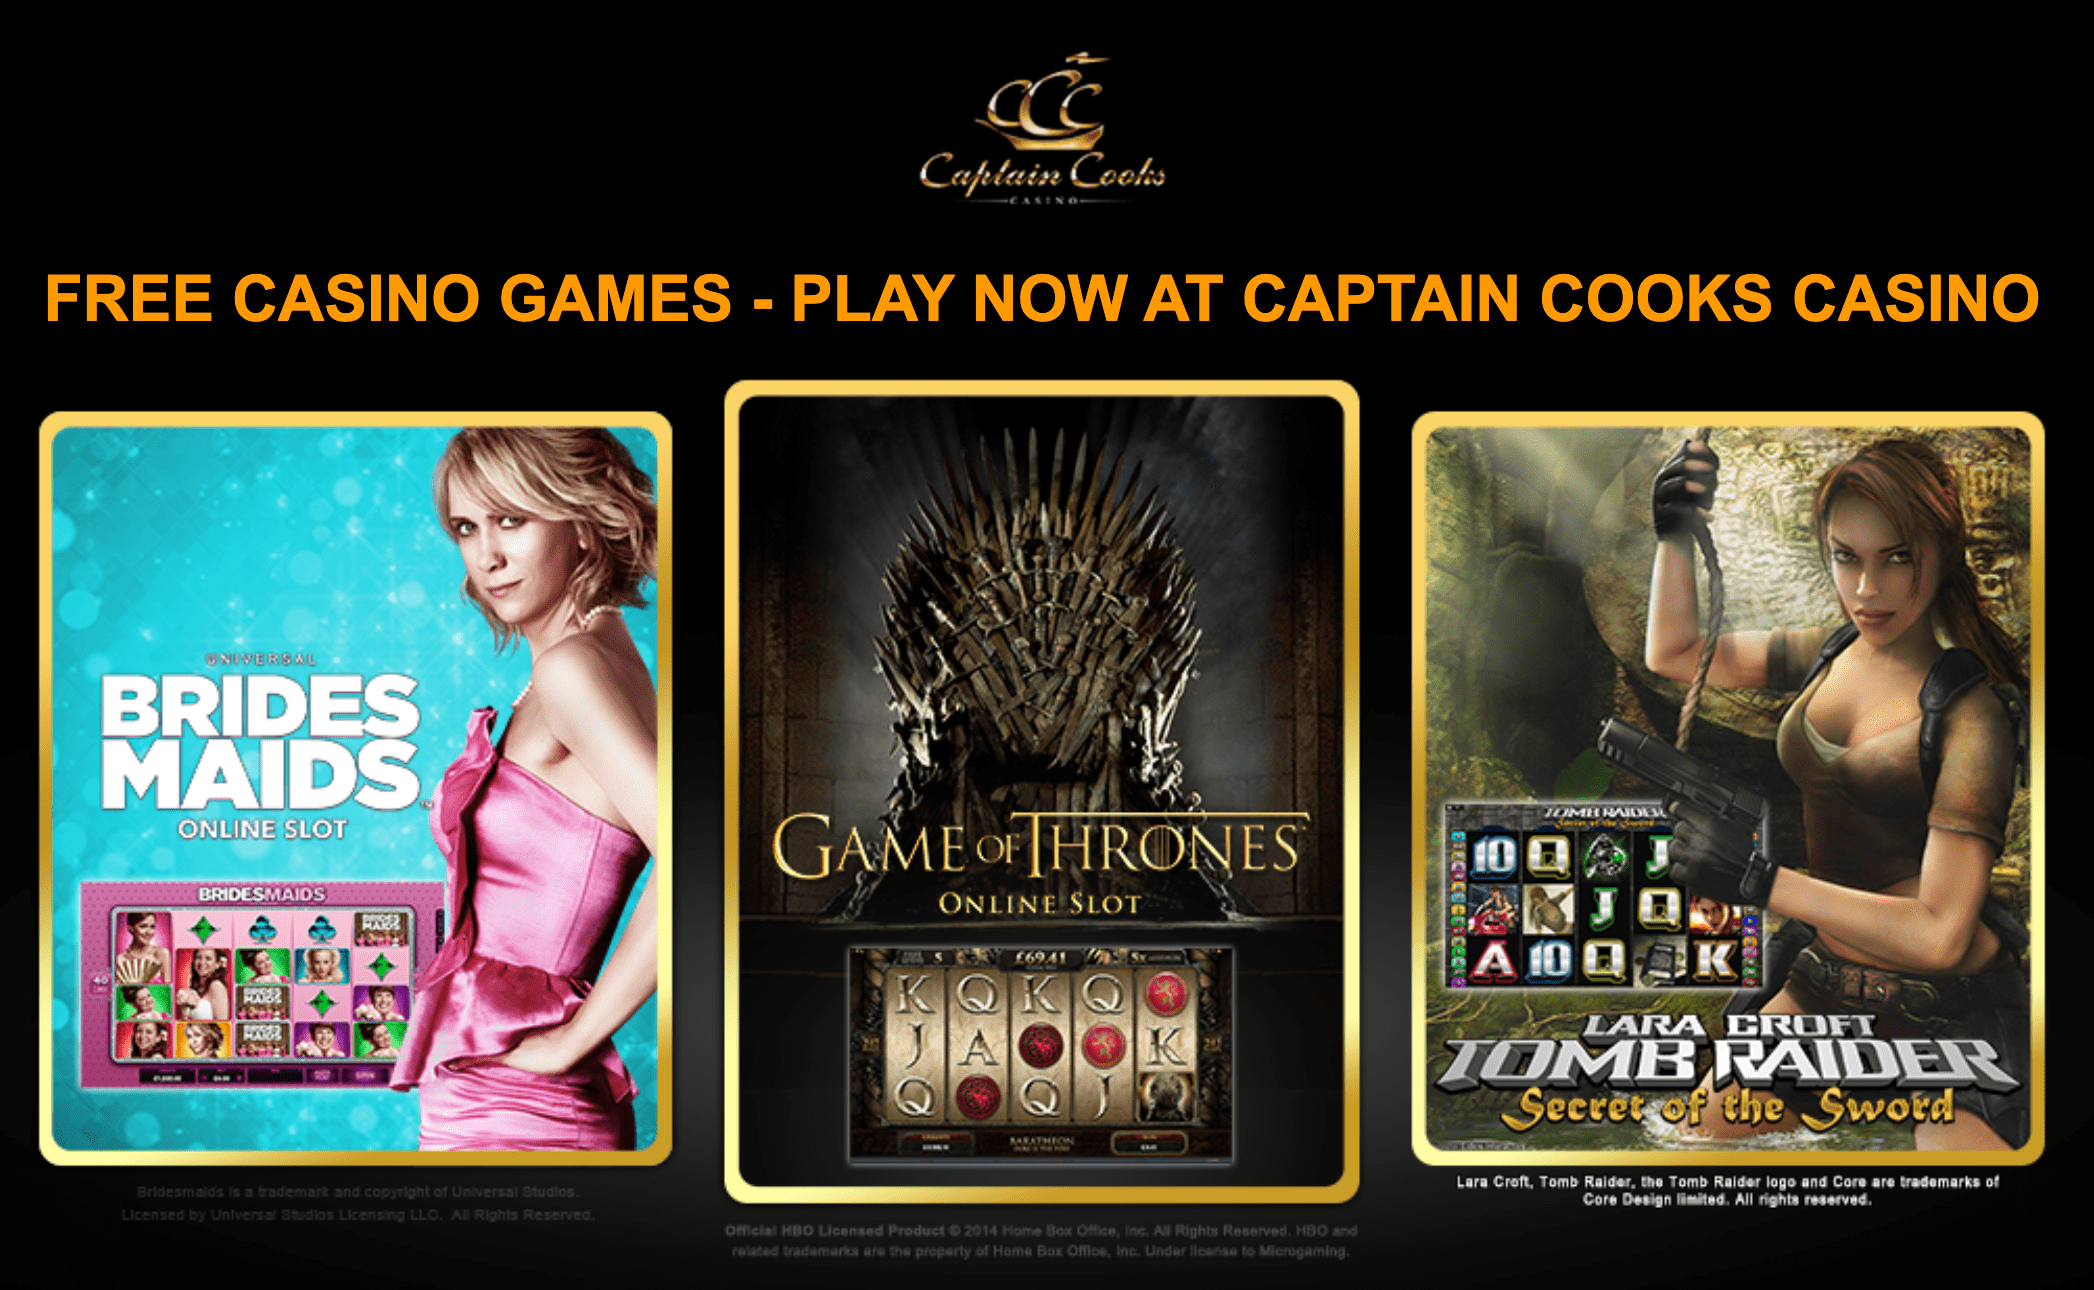 CaptainCooks Casino Games